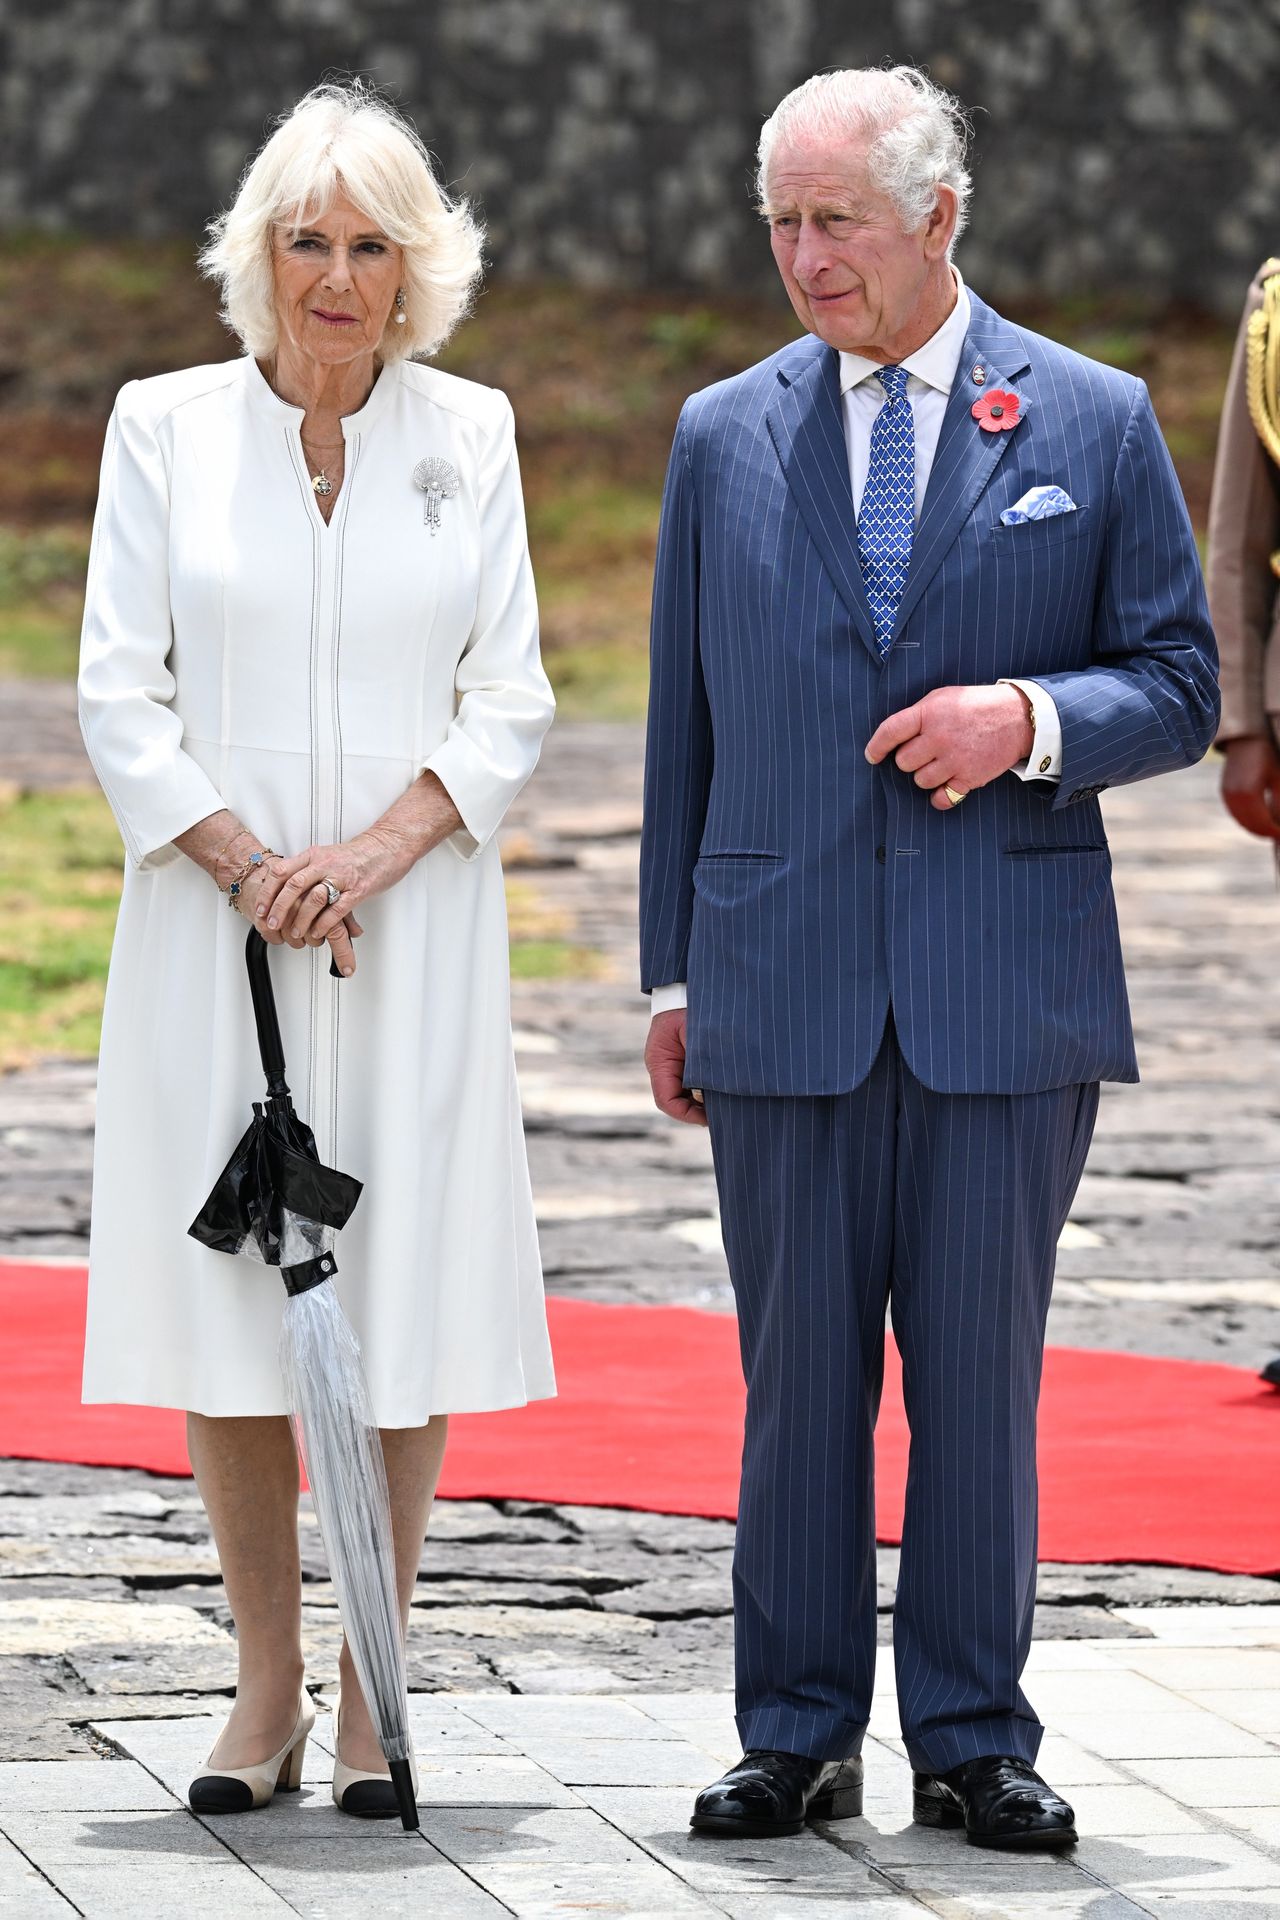 Queen Camilla wore Queen Elizabeth's brooch during her visit to Kenya.